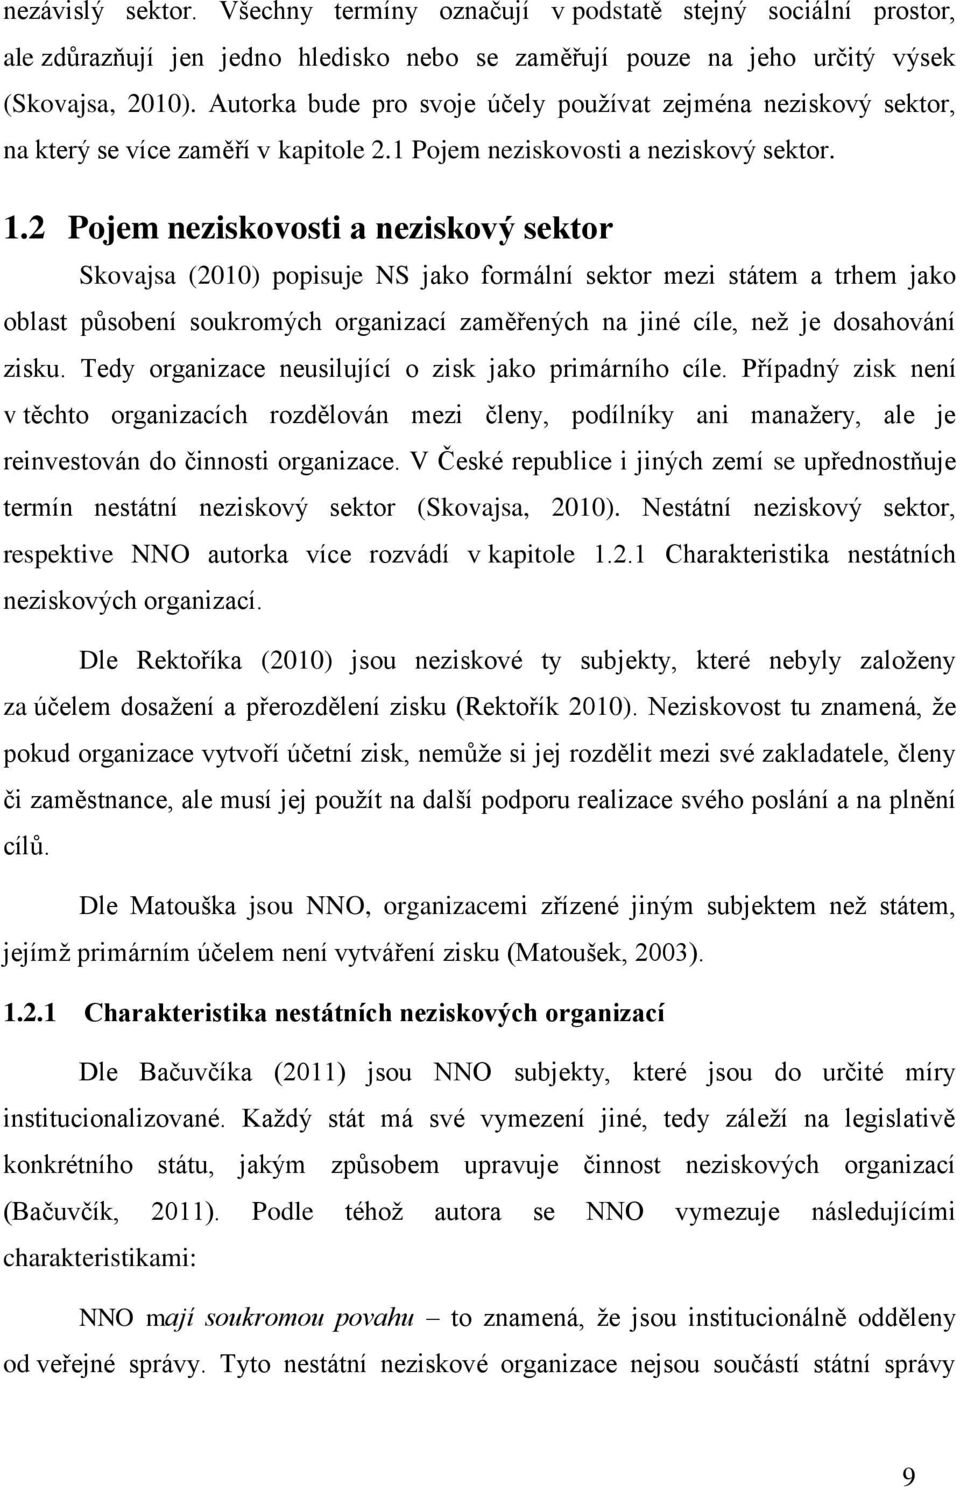 2 Pojem neziskovosti a neziskový sektor Skovajsa (2010) popisuje NS jako formální sektor mezi státem a trhem jako oblast působení soukromých organizací zaměřených na jiné cíle, než je dosahování